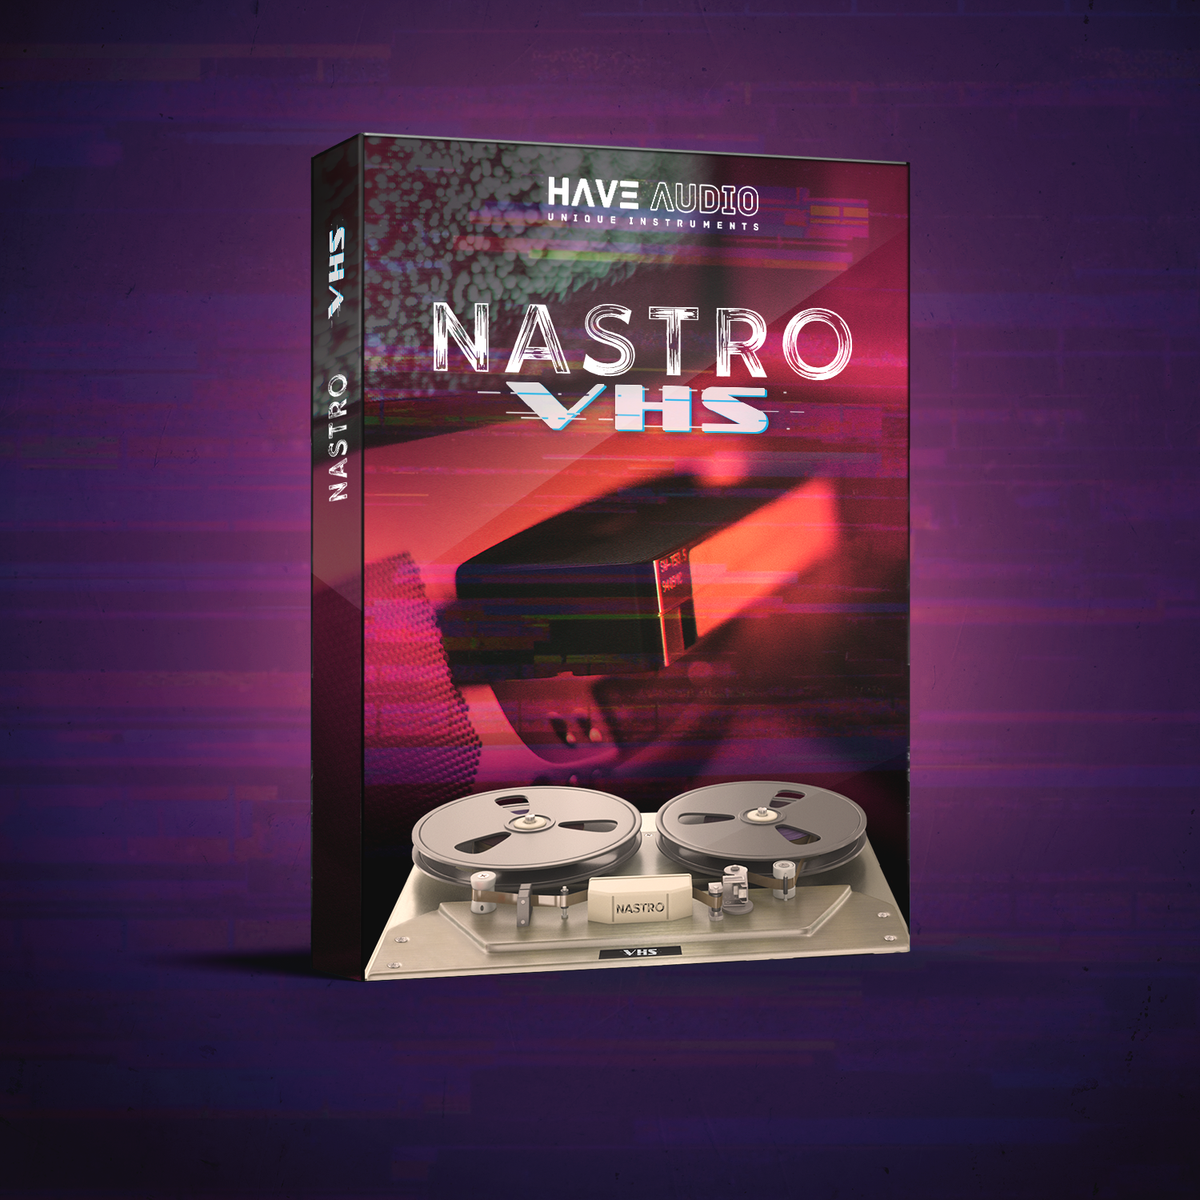 Download NASTRO VHS KONTAKT MaGeSY ®™⭐